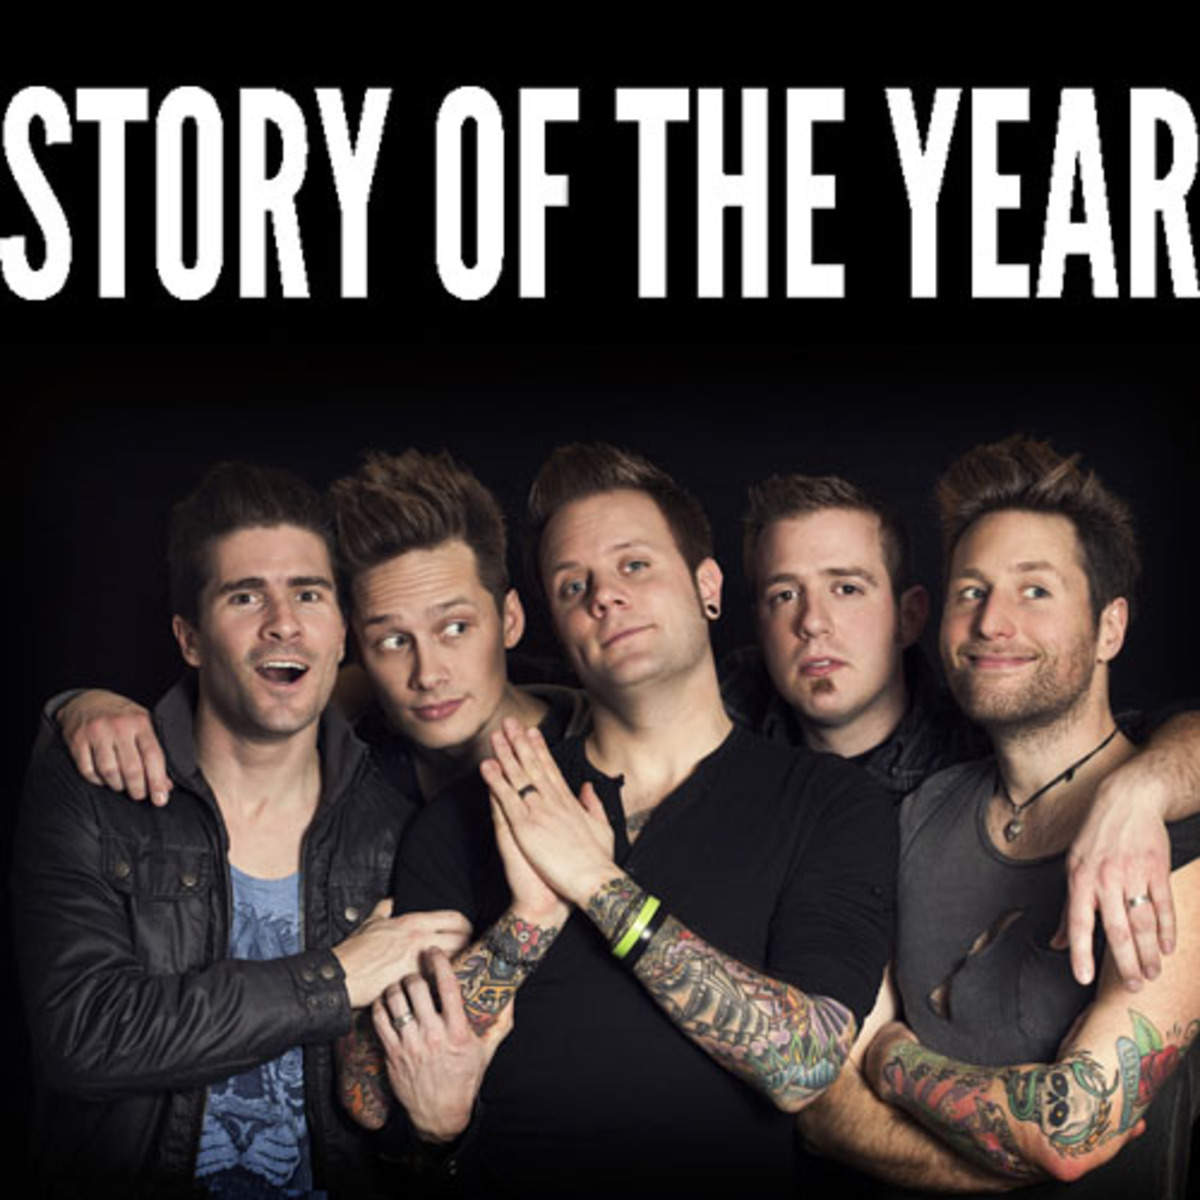 Product of the year. Story of the year. Story of the year Band. Story of the year 2003. Story of the year исполнитель группа.